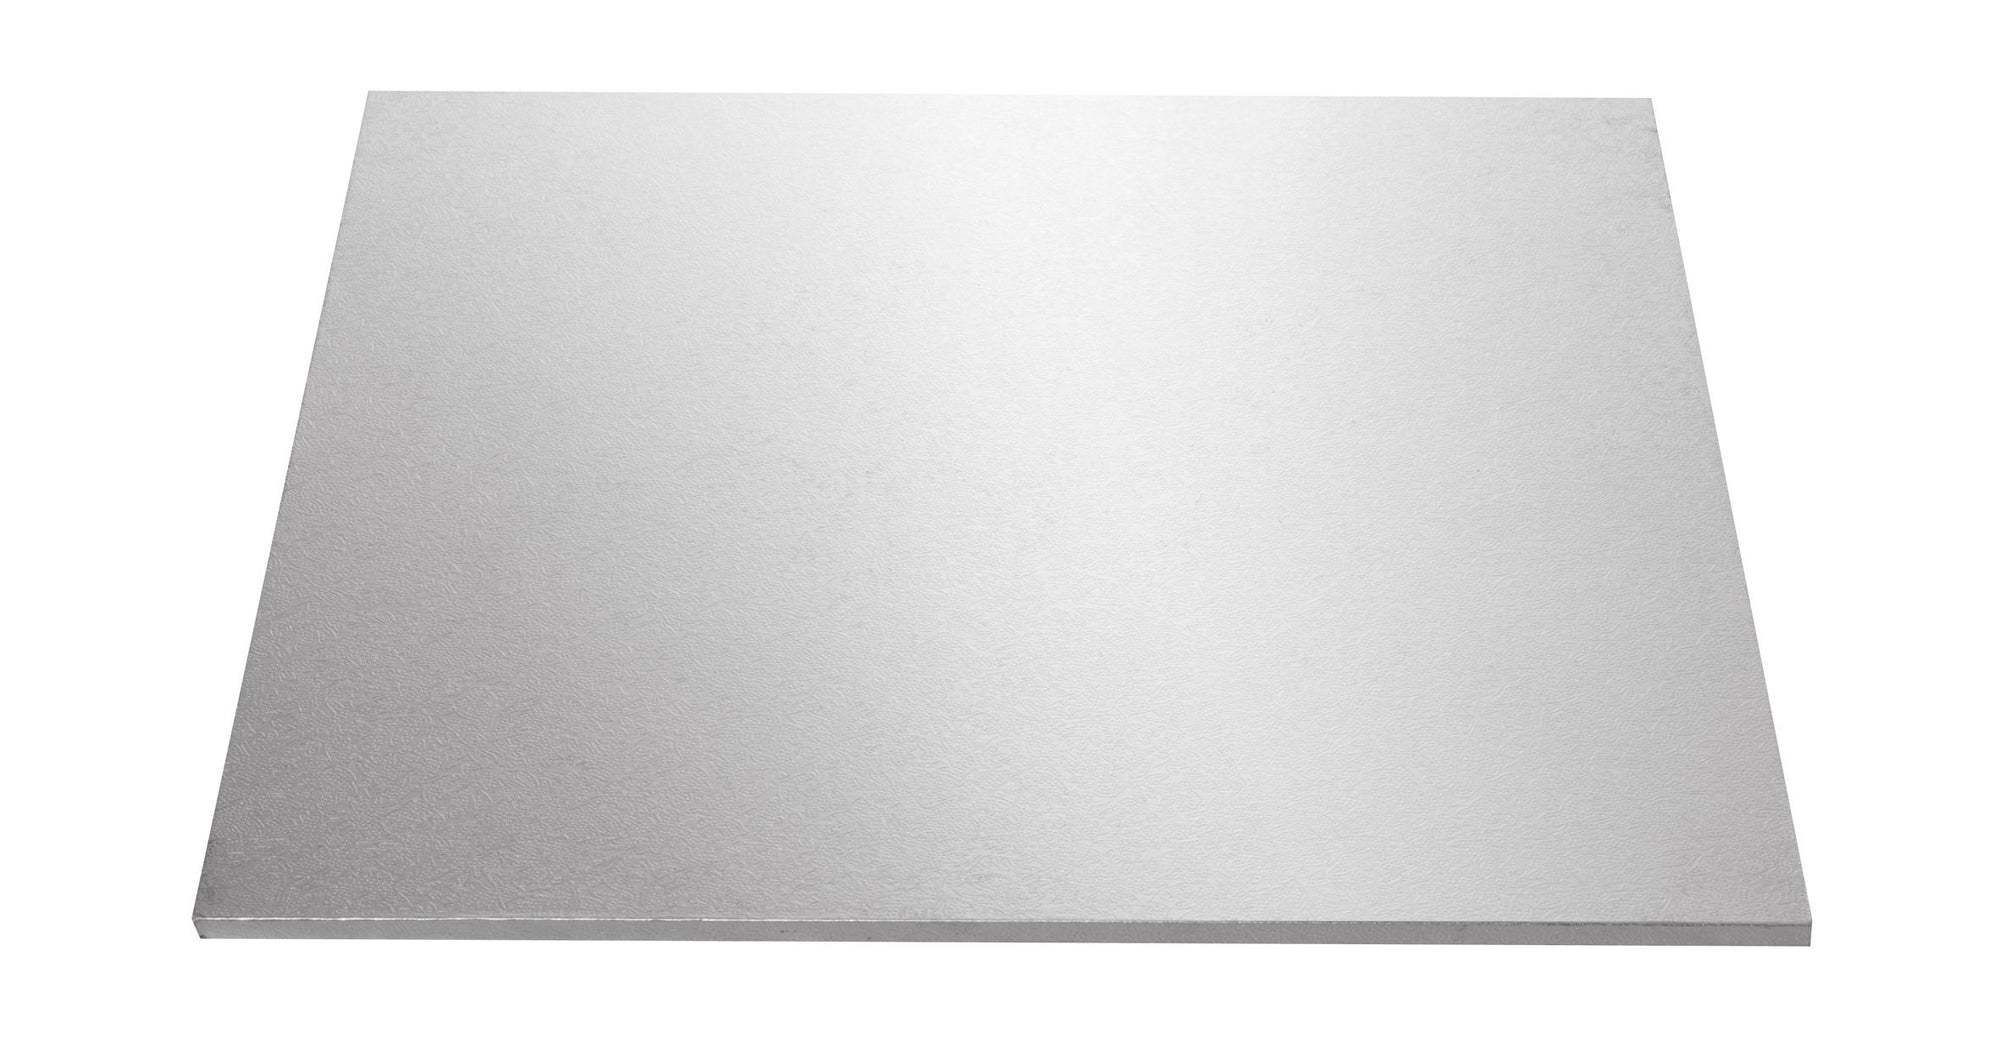 Rectangle 16x20 INCH Silver Foil Board (Mondo)